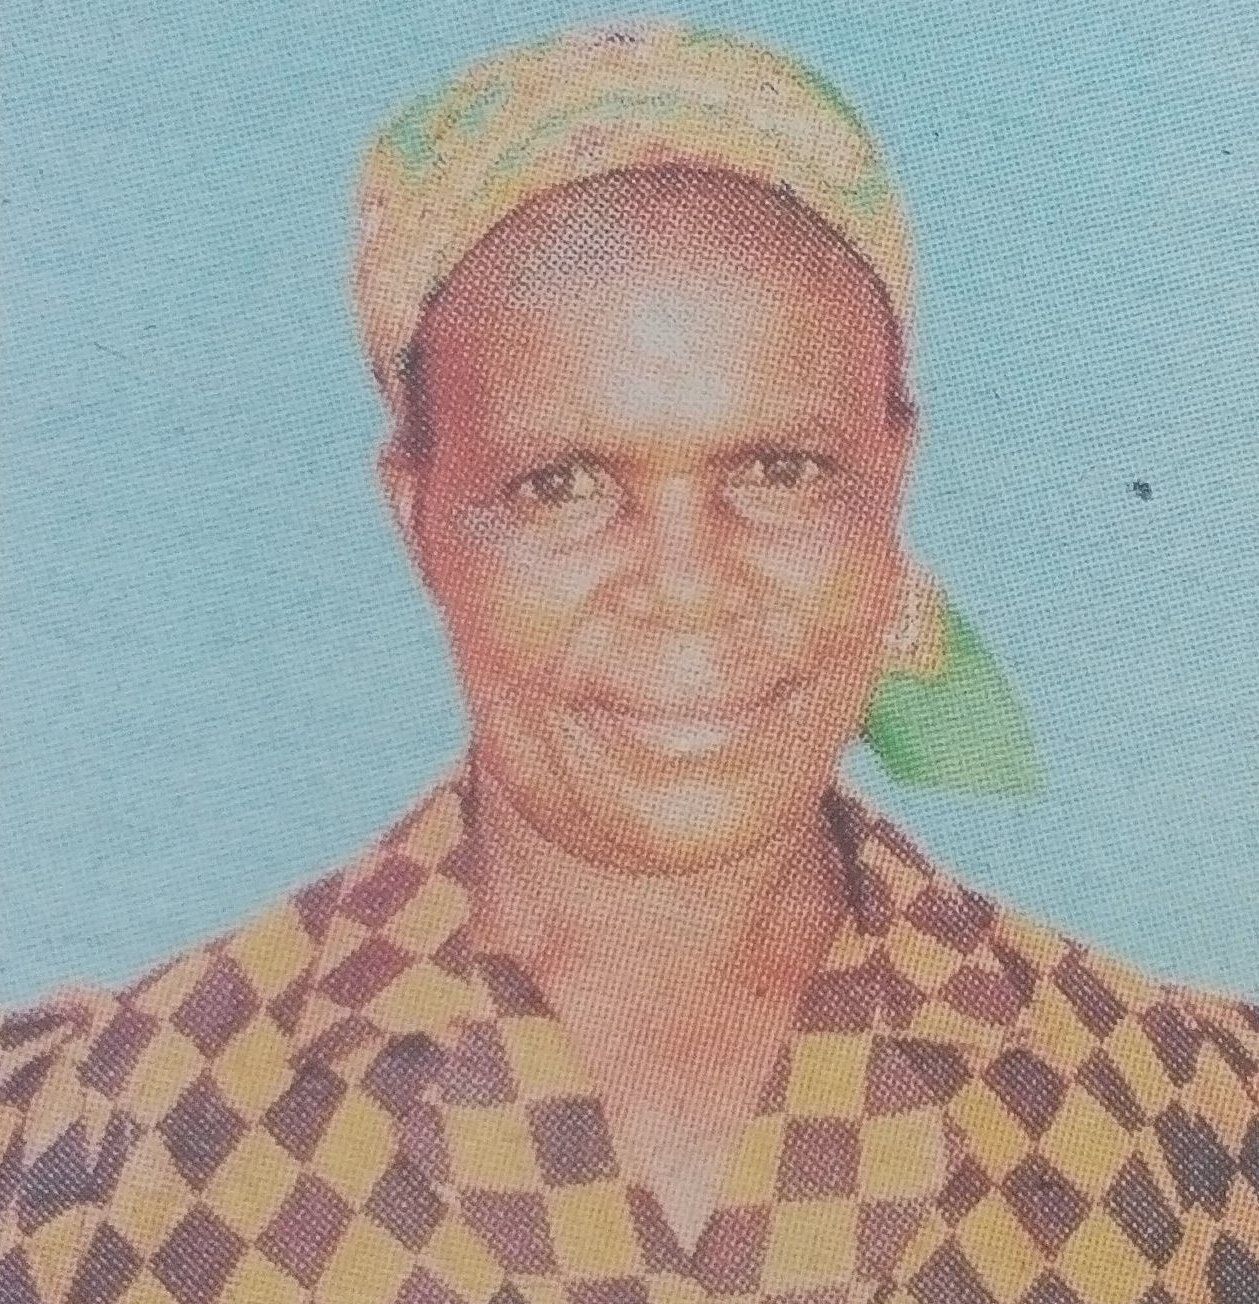 Obituary Image of Tabitha Kerubo Obaga